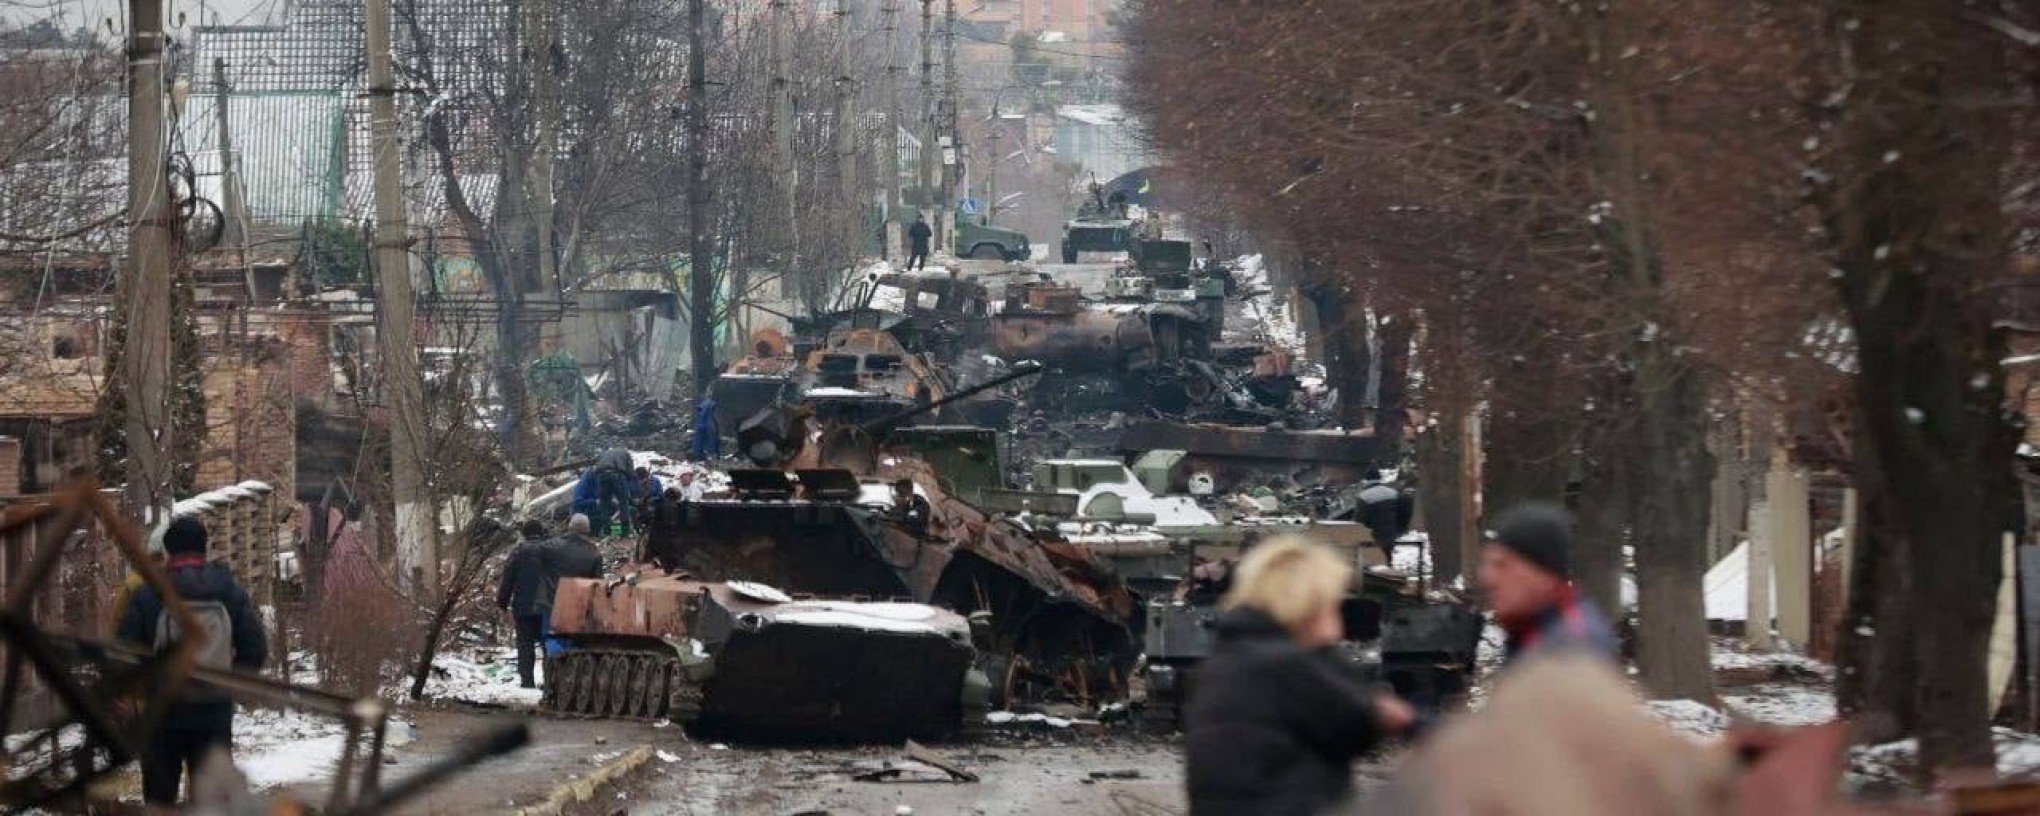 Телеграмм война на украине без цензуры смотреть онлайн фото 93